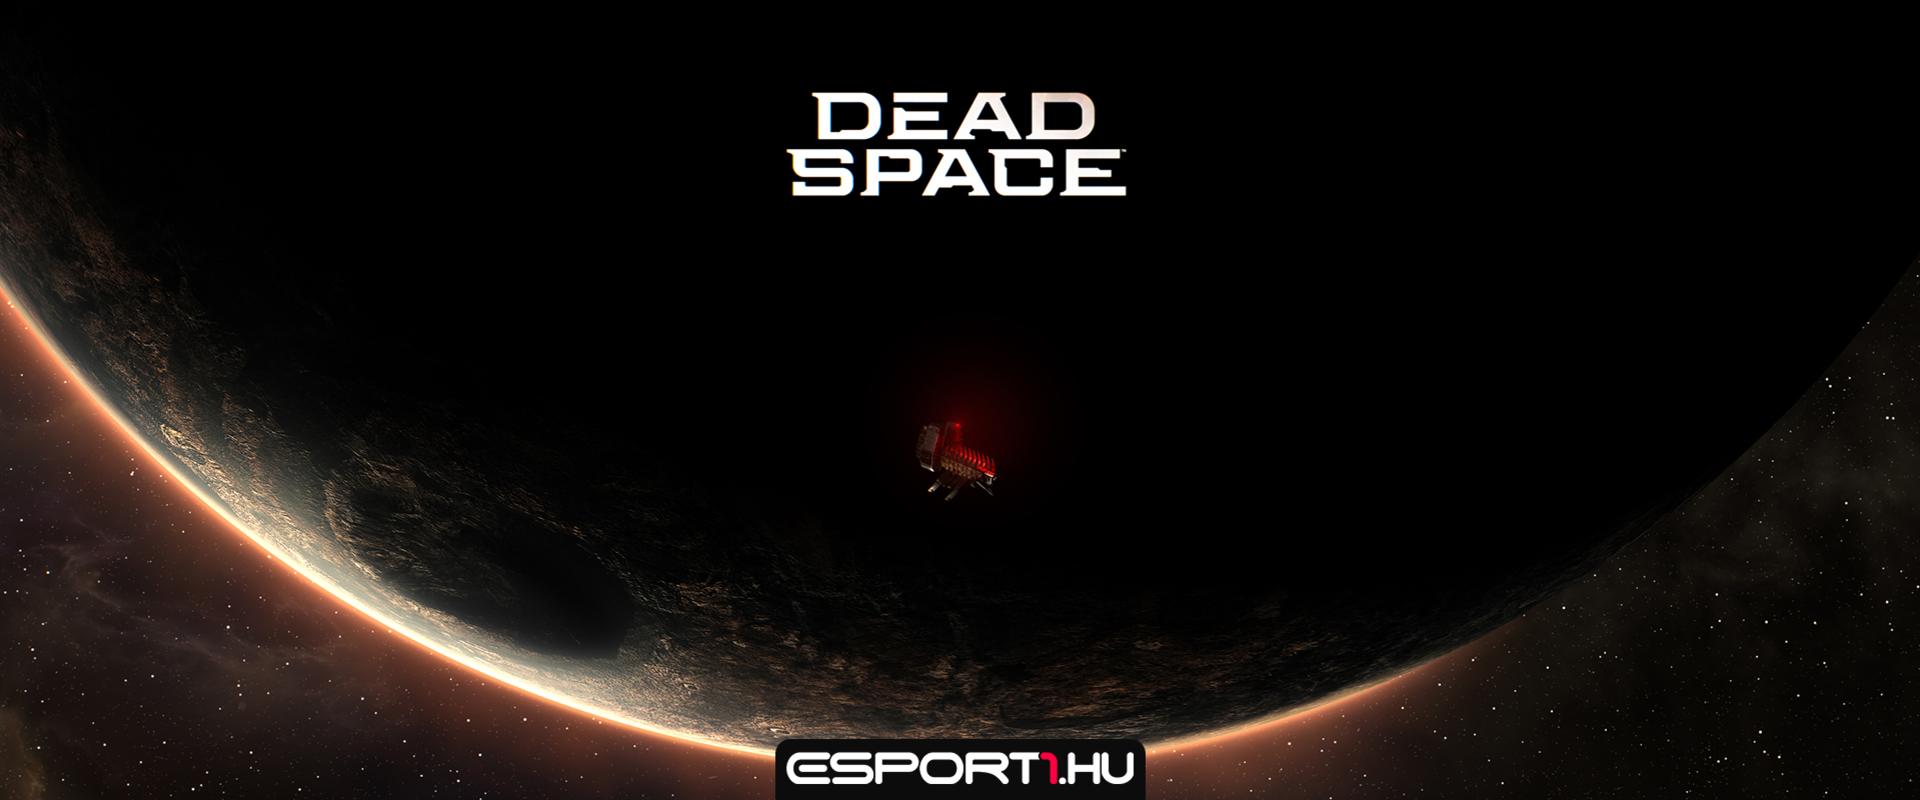 Kiderült a Dead Space remake változatának megjelenési ideje